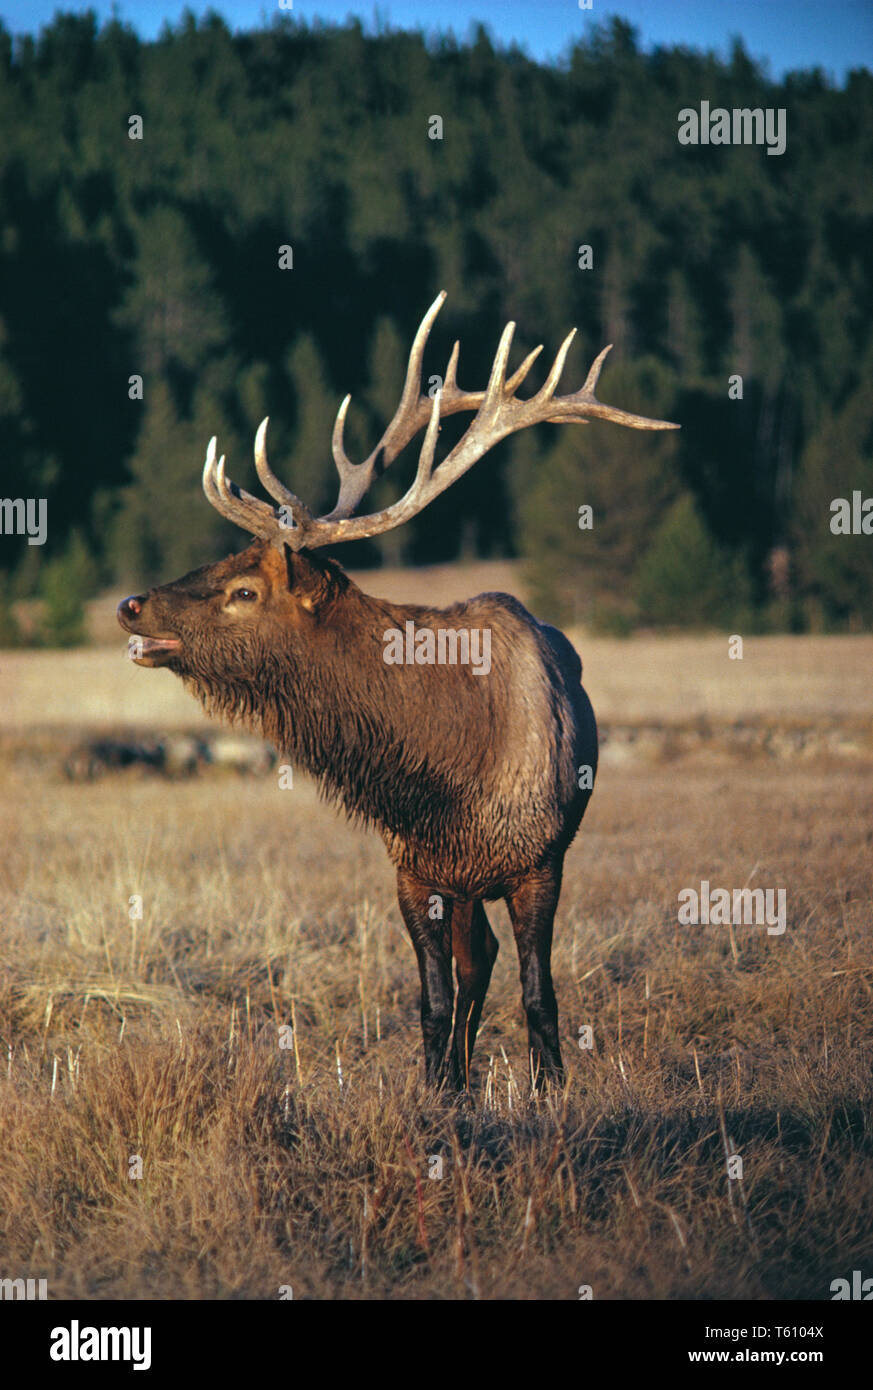 Canadá. La vida silvestre. Elk. Cervus canadensis. Foto de stock